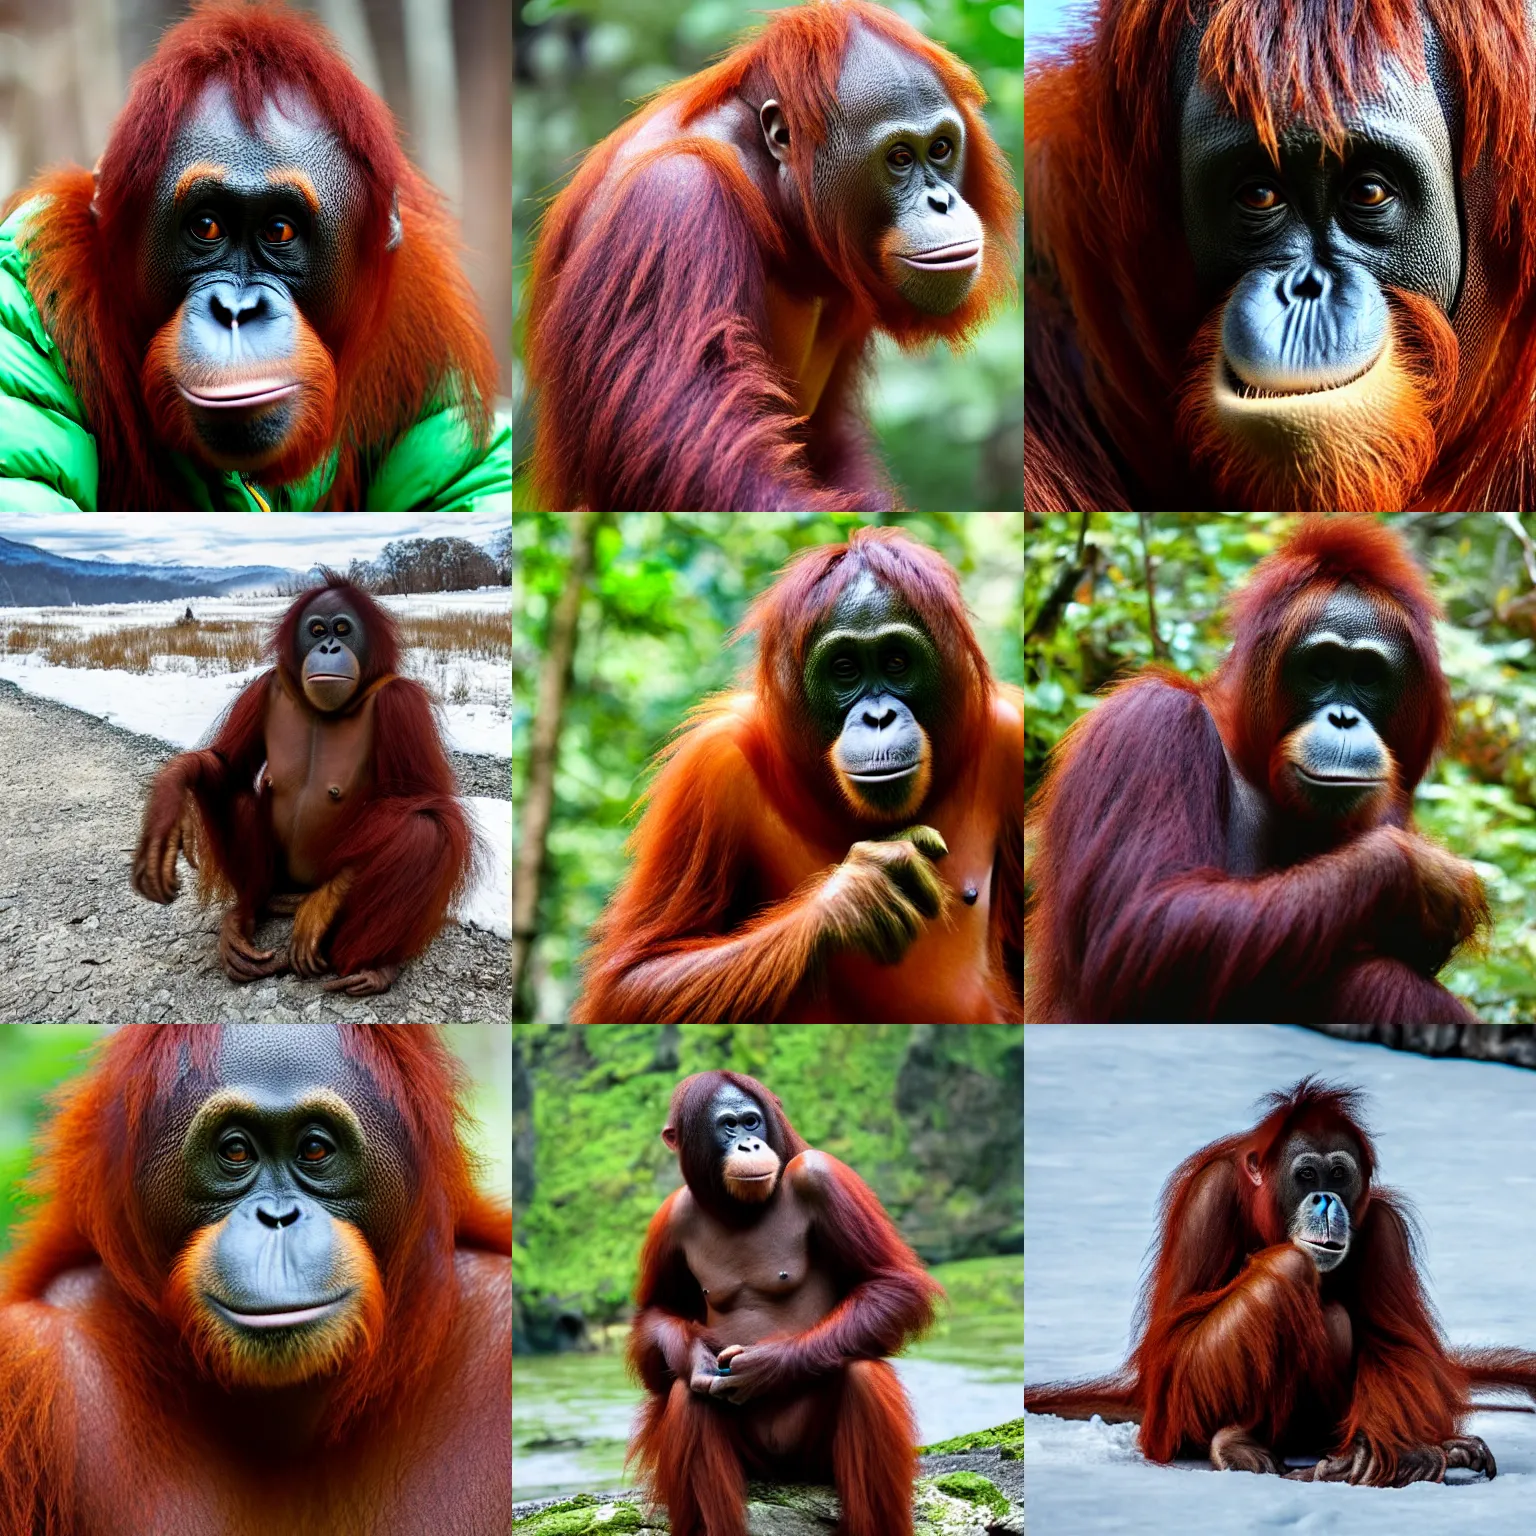 Prompt: an orangutan wearing a puffer jacket